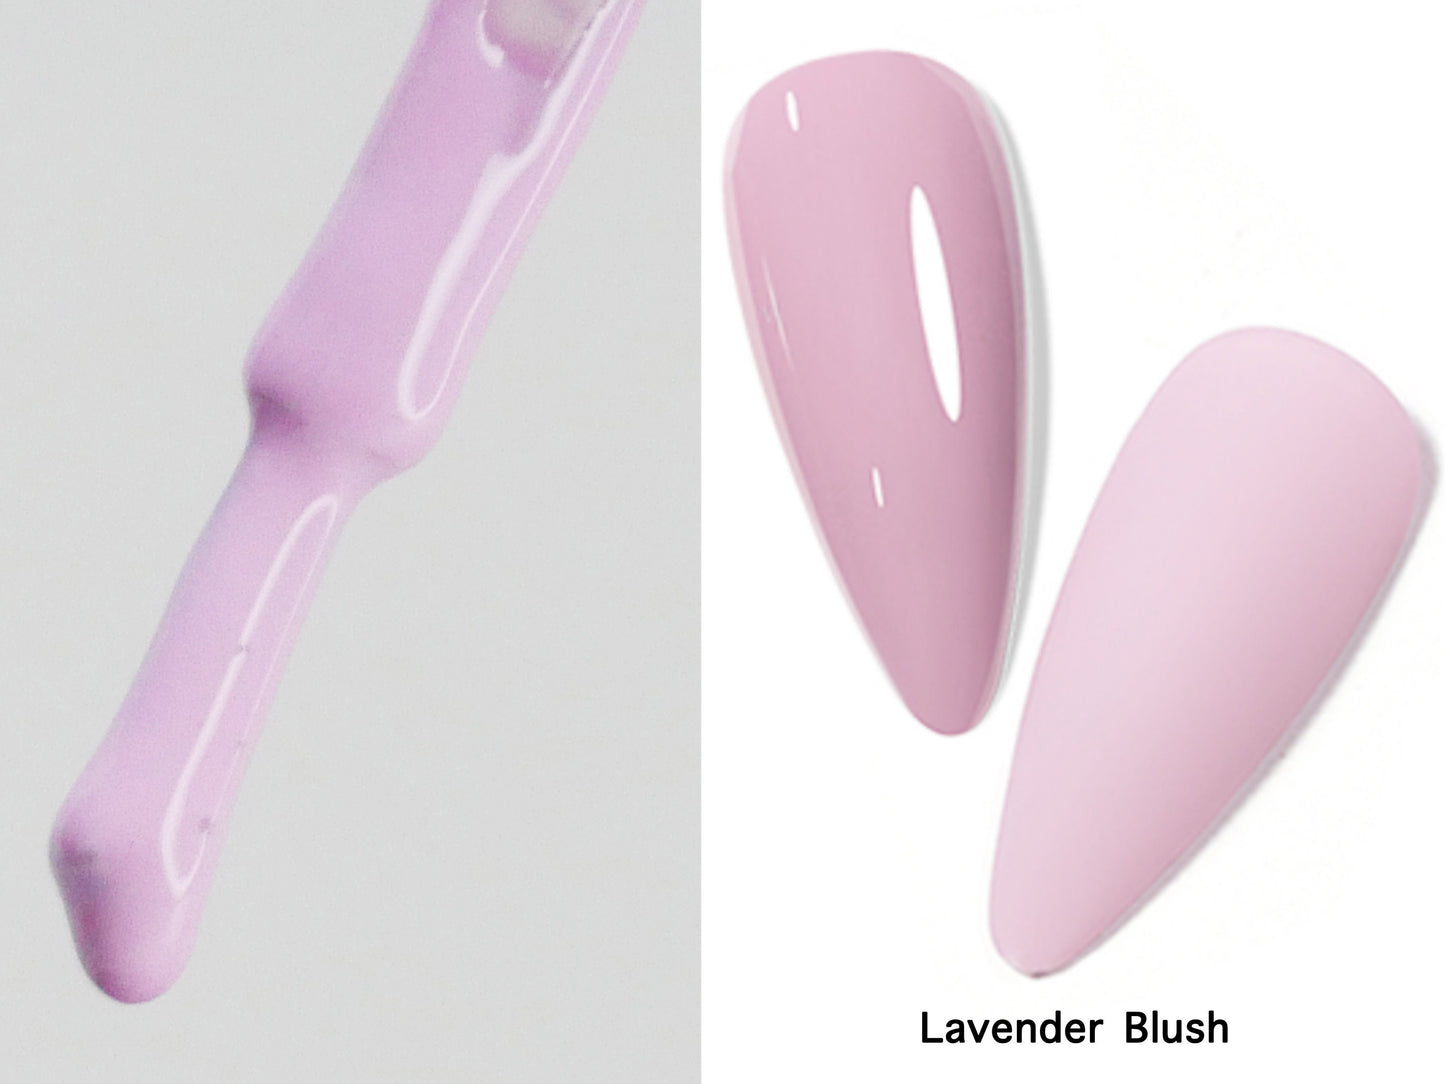 15ml Lavender Blush Gel polish/ Carnation Pink Solid color Nails/ Pastel Baby Pink Soak off UV/Led Gel polish Manicure Pedicure